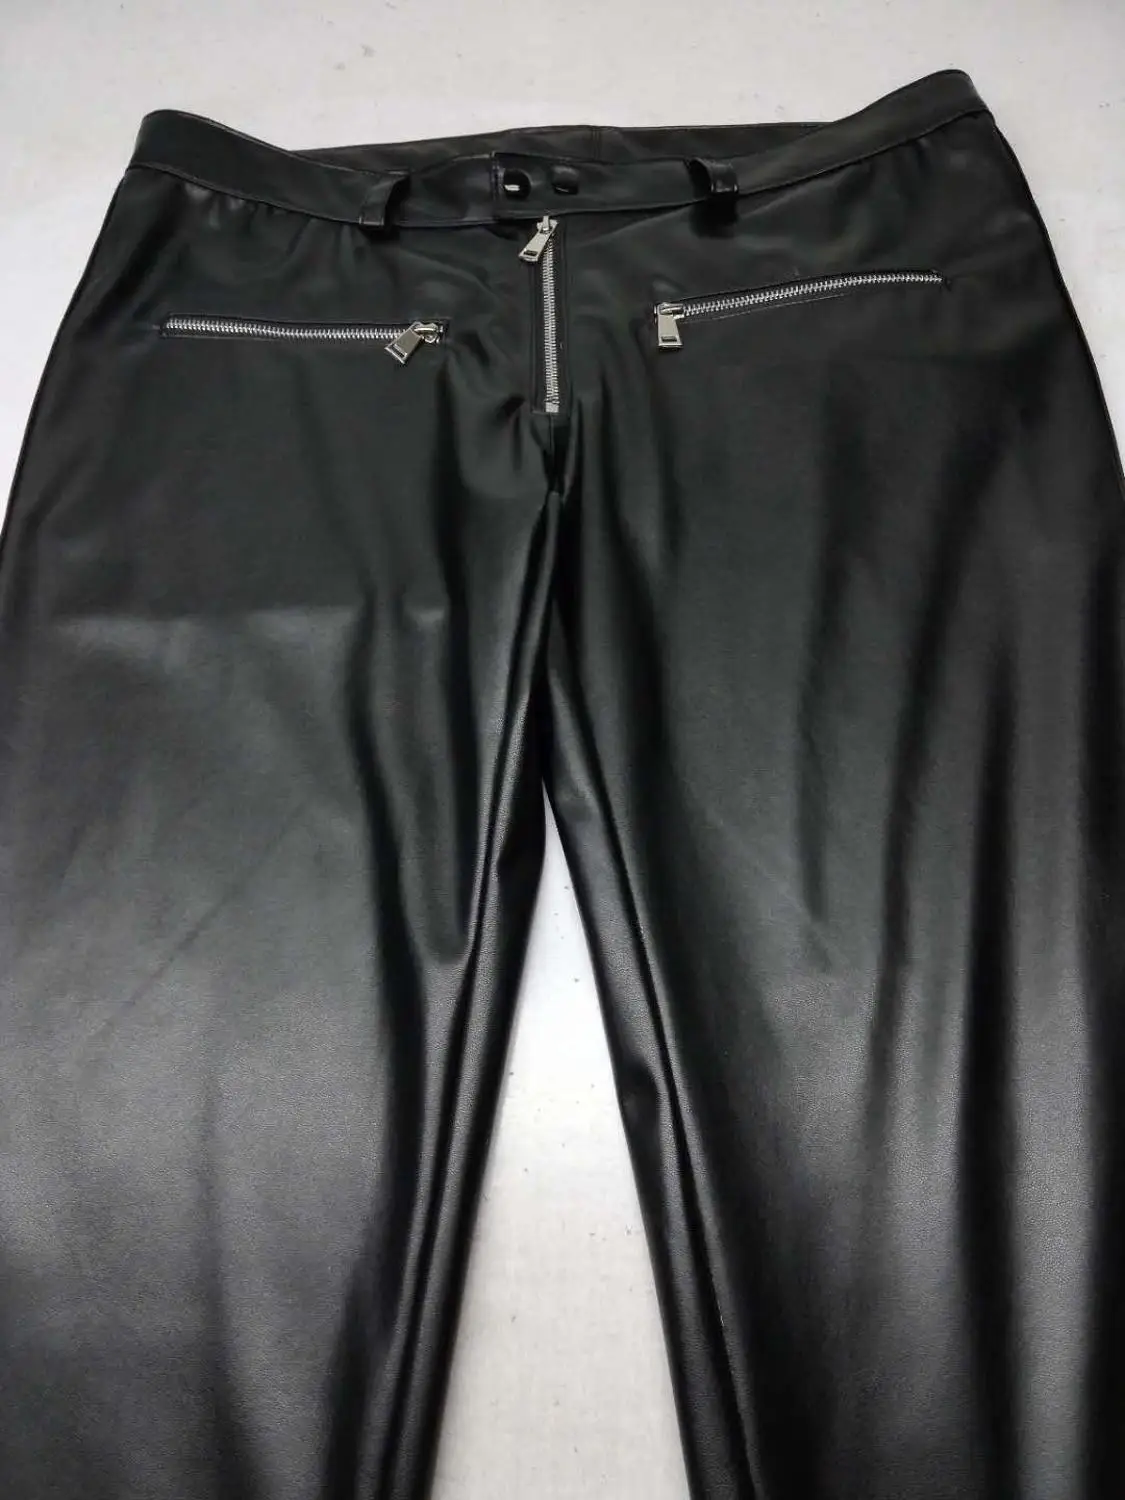 27-37 Для мужчин одежда модные первоначально разработан с несколькими карманами на молнии кожаные брюки, мужские костюмы для сцены - Цвет: Black